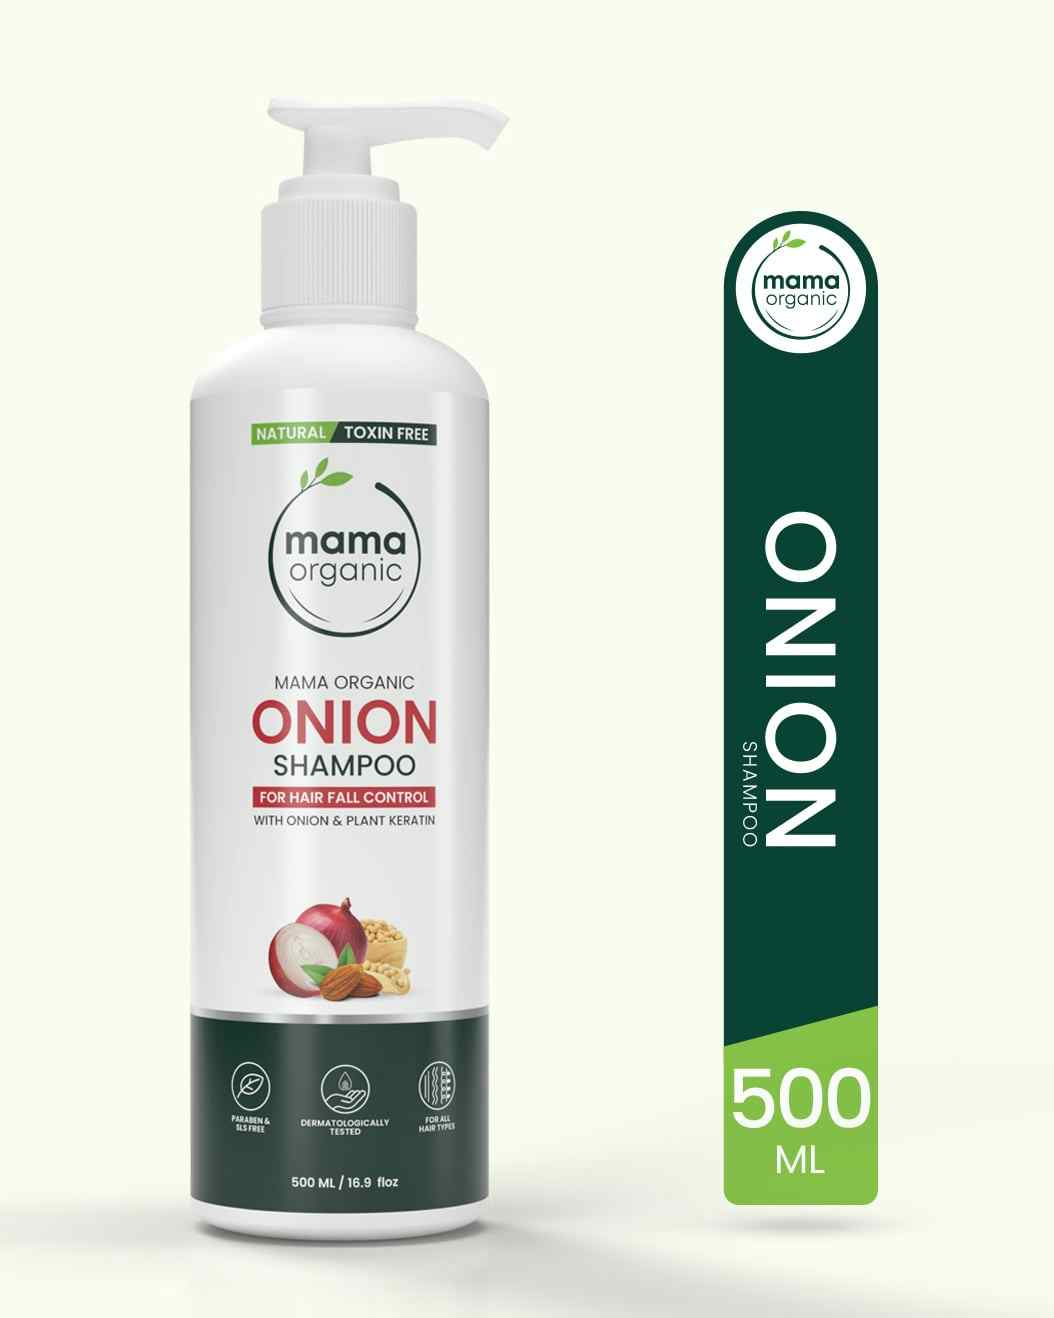 Mama Organic Onion Anti Hair Loss Shampoo For Hair Growth & Control Hair Fall | For Girls & Women | Natural & Toxin-Free - 500ml